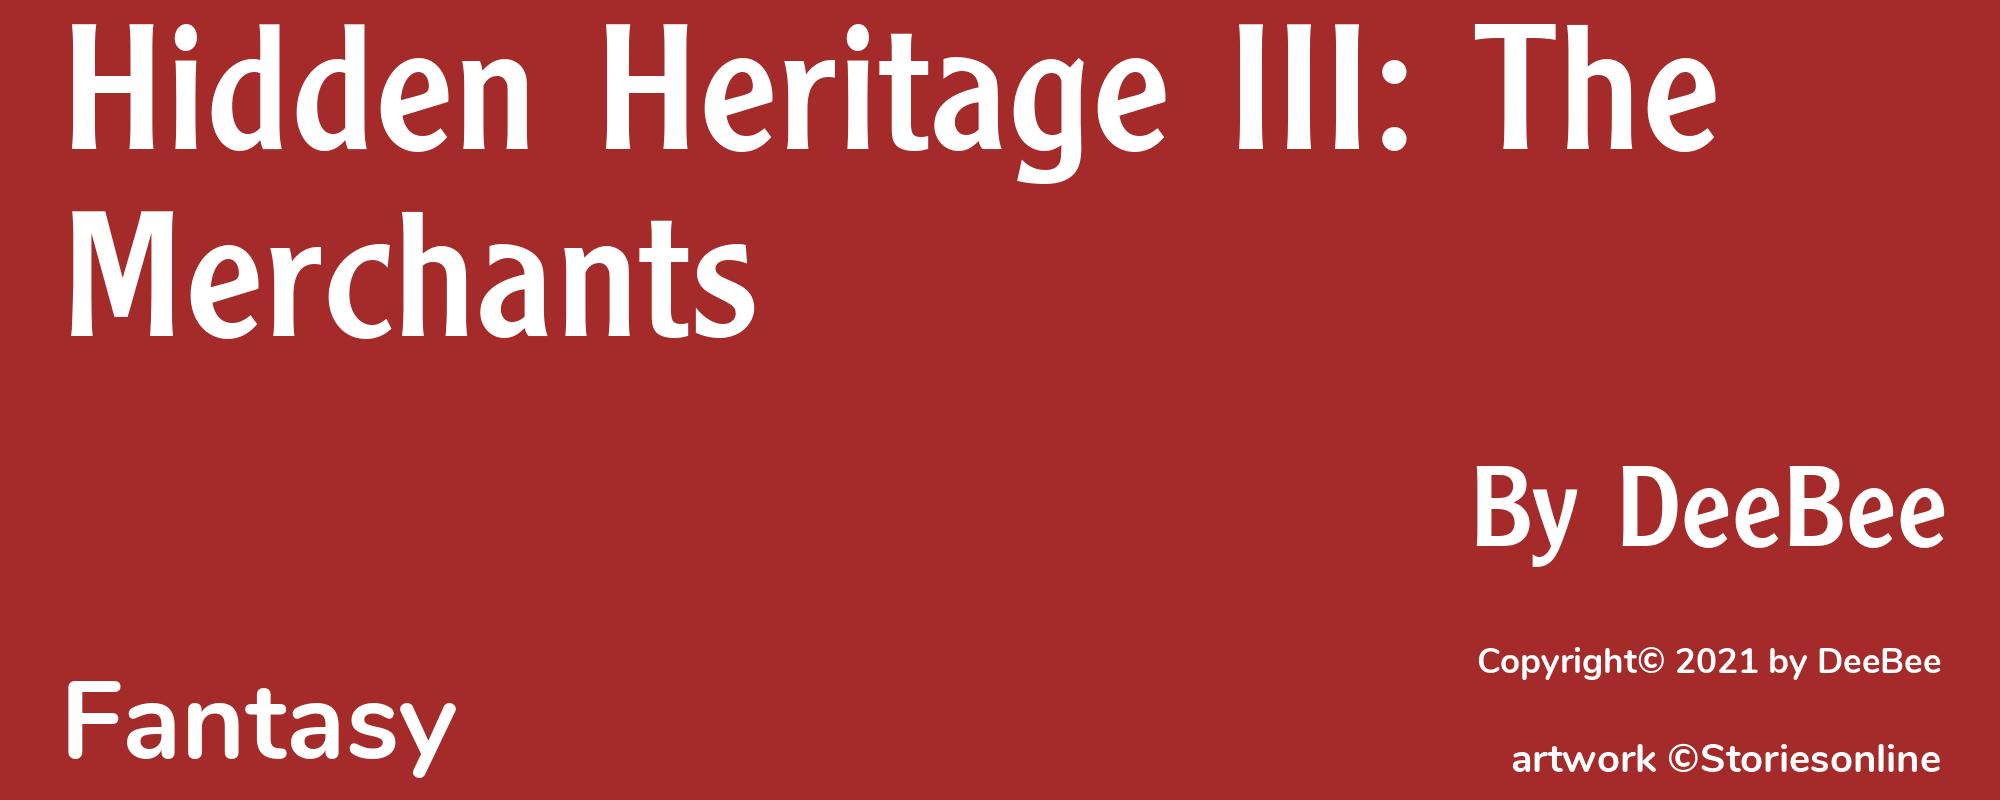 Hidden Heritage III: The Merchants - Cover